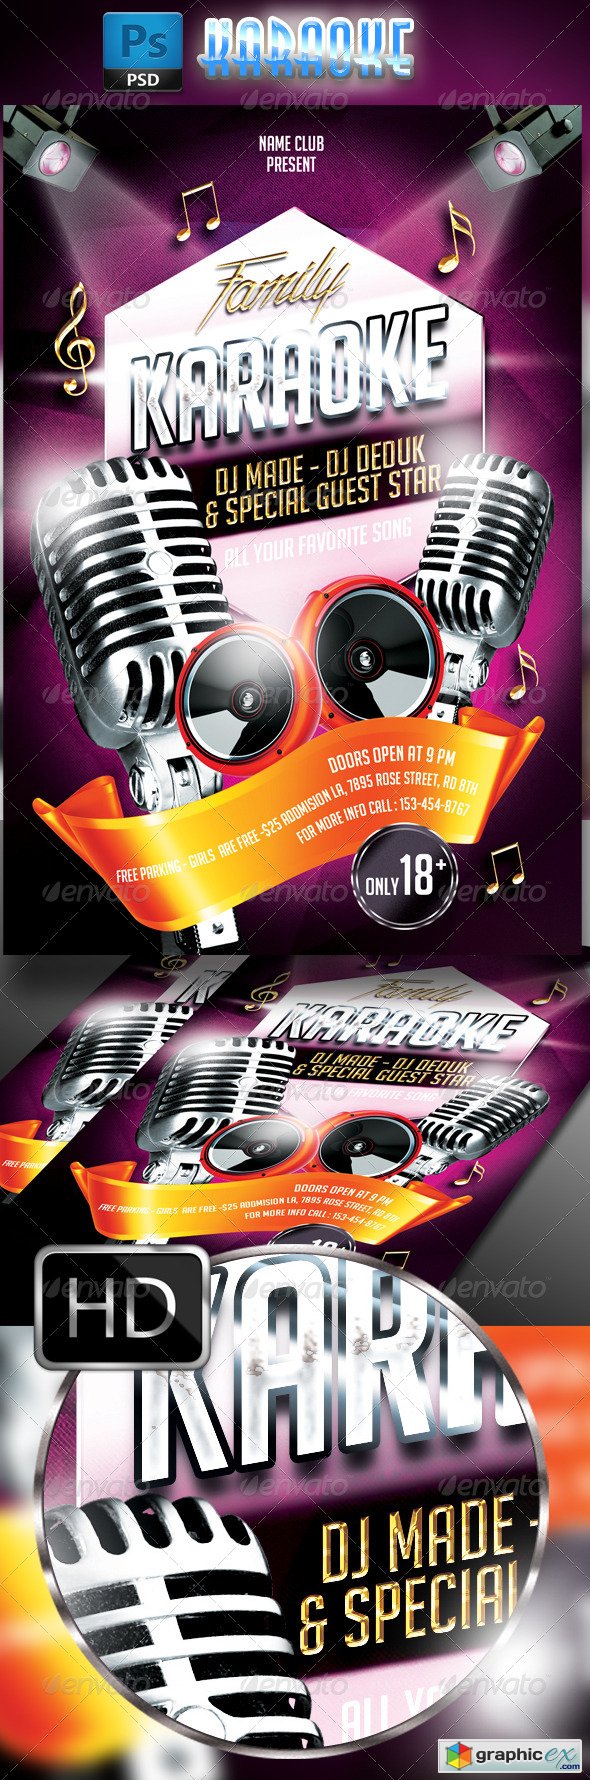 Karaoke Flyer Template 7763861